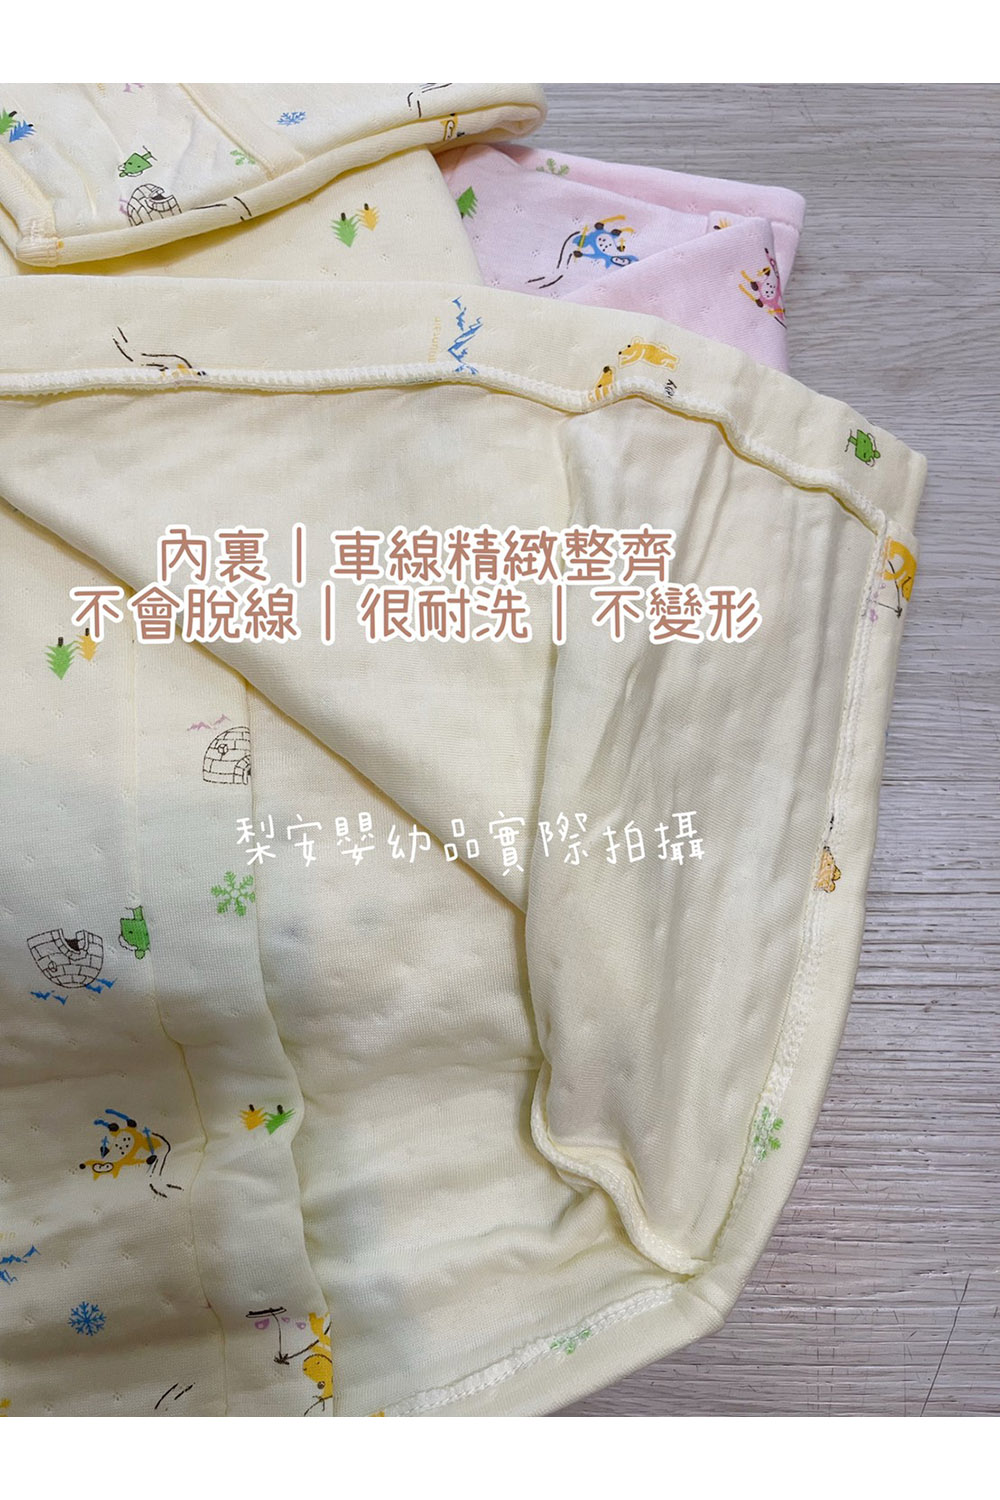 Lianne baby 台灣製厚軟綿綁帶和服兒童長袖睡袍防踢